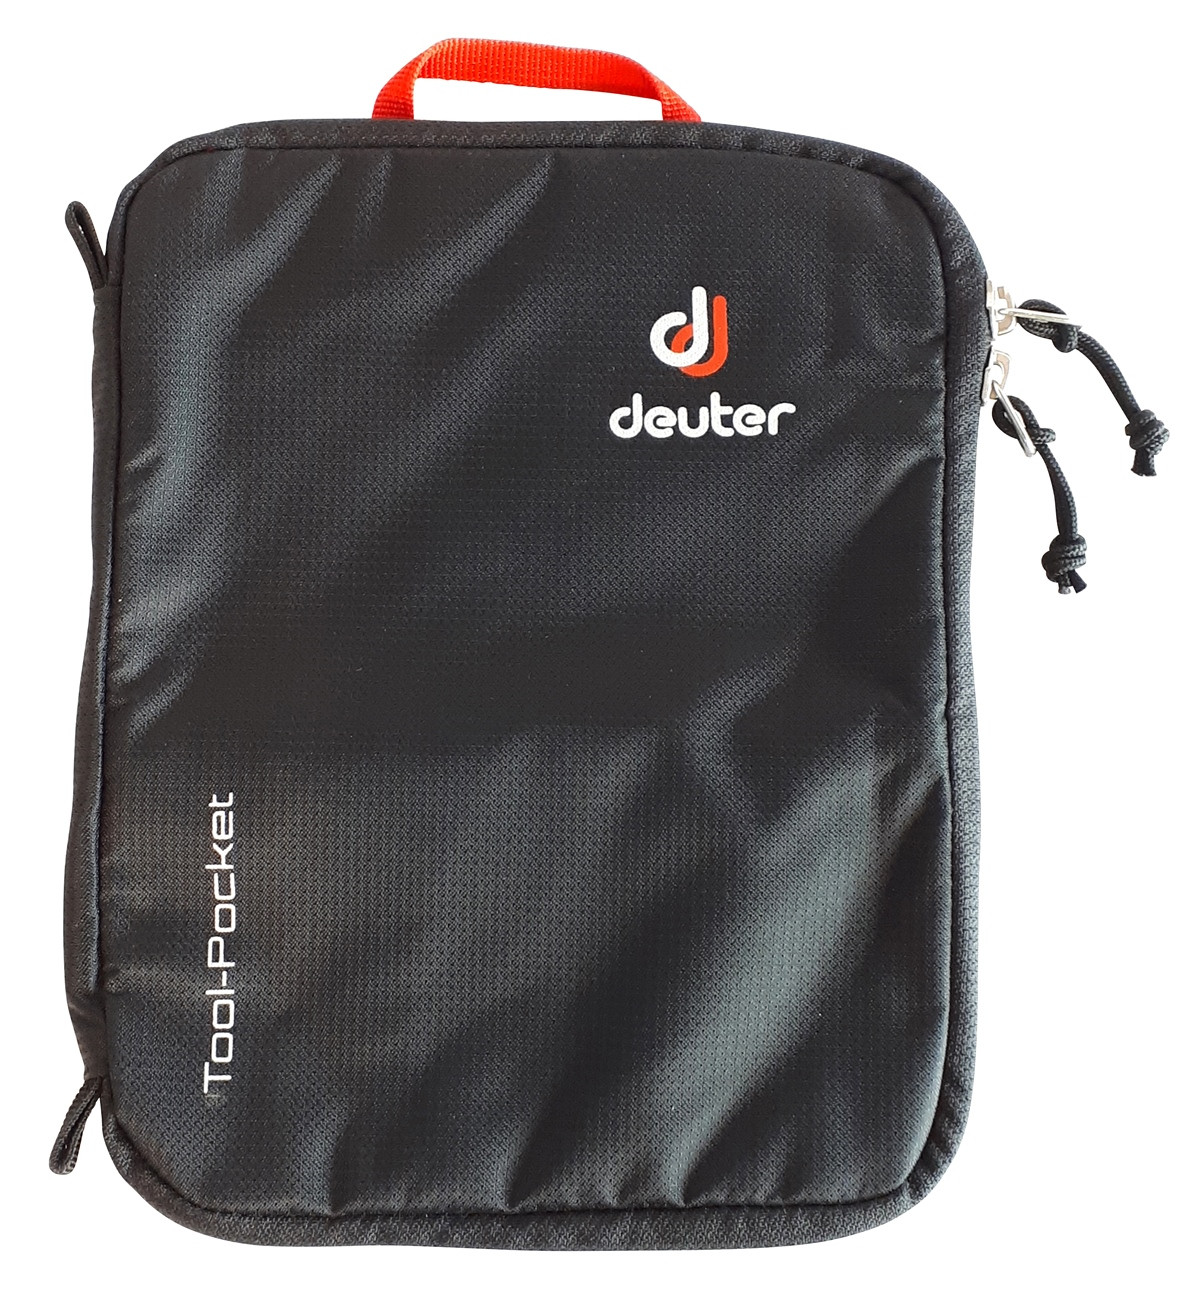 Deuter Tool Pocket Fahrradtasche